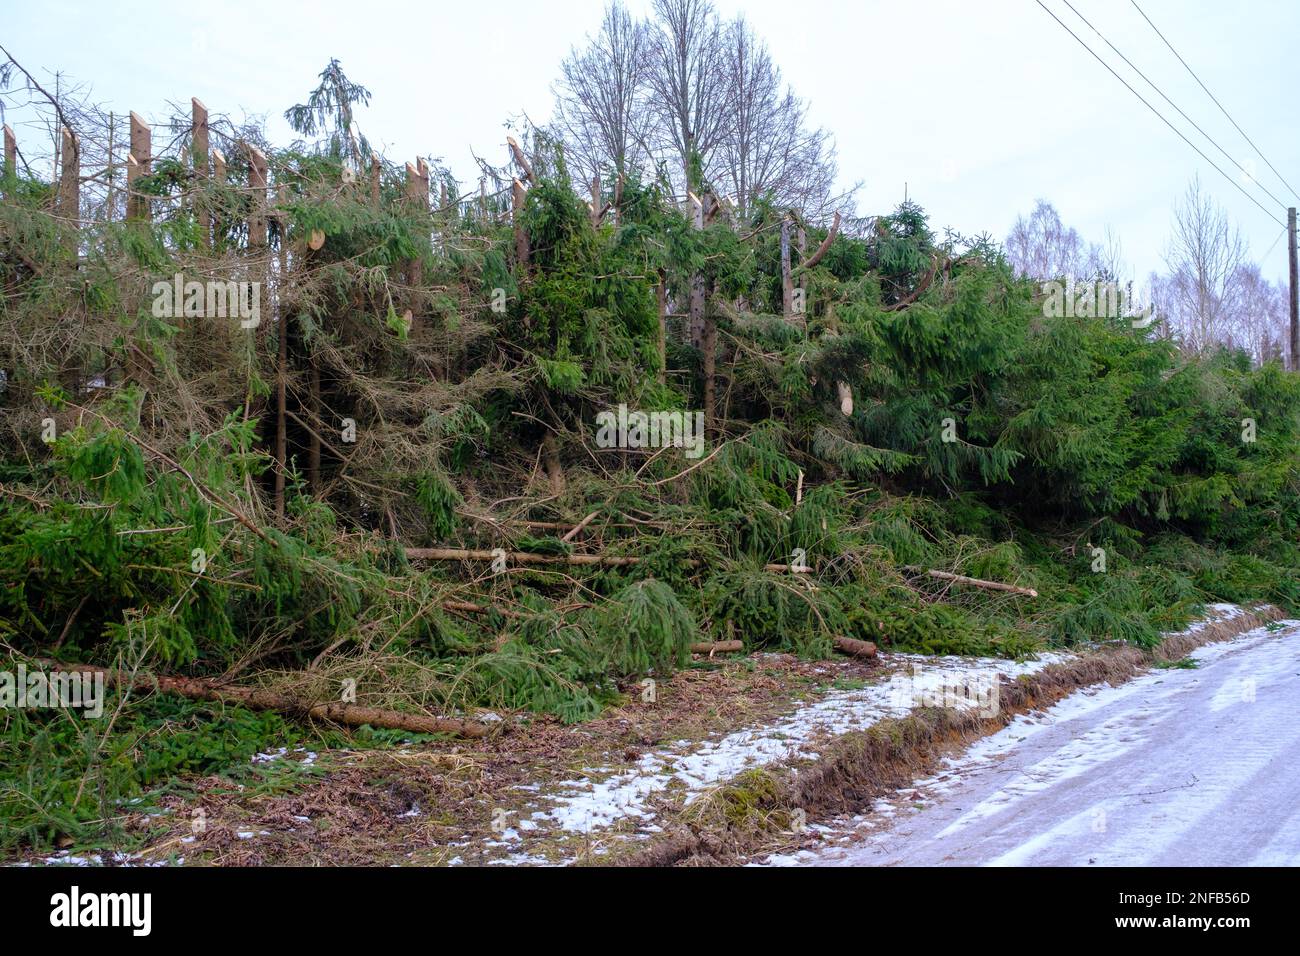 Tagliare le cime degli alberi nell'area dei cavi di alimentazione per ridurre le interruzioni di corrente Foto Stock